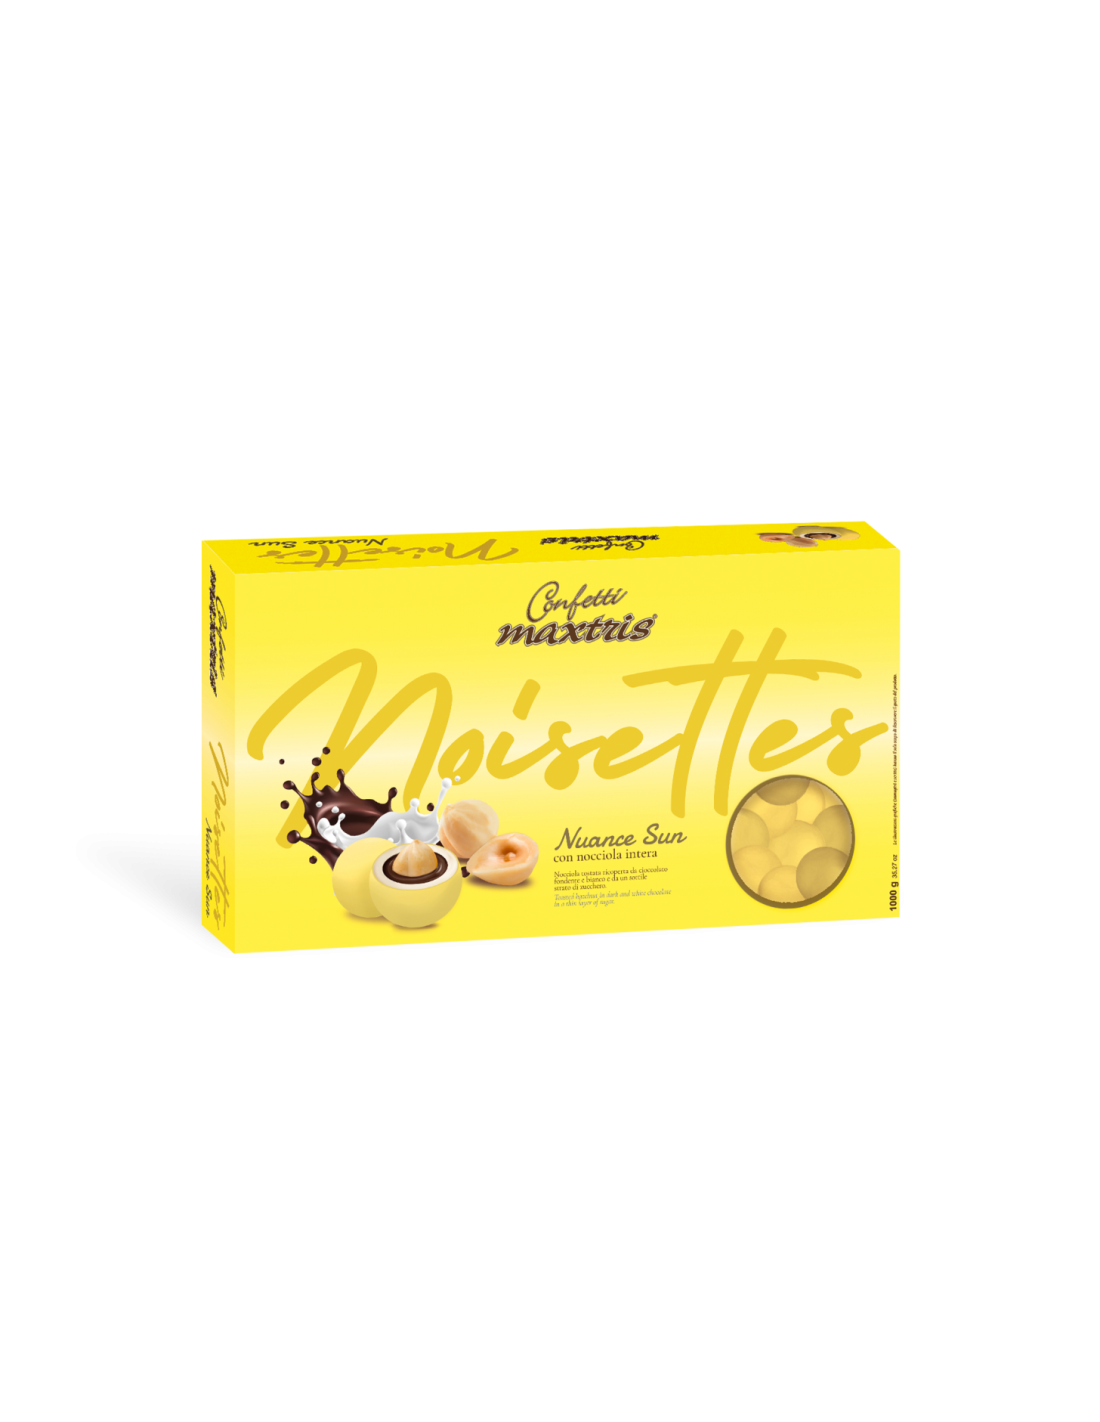 Confetti Maxtris Les Noisettes Nuance Sun - gialli 1kg